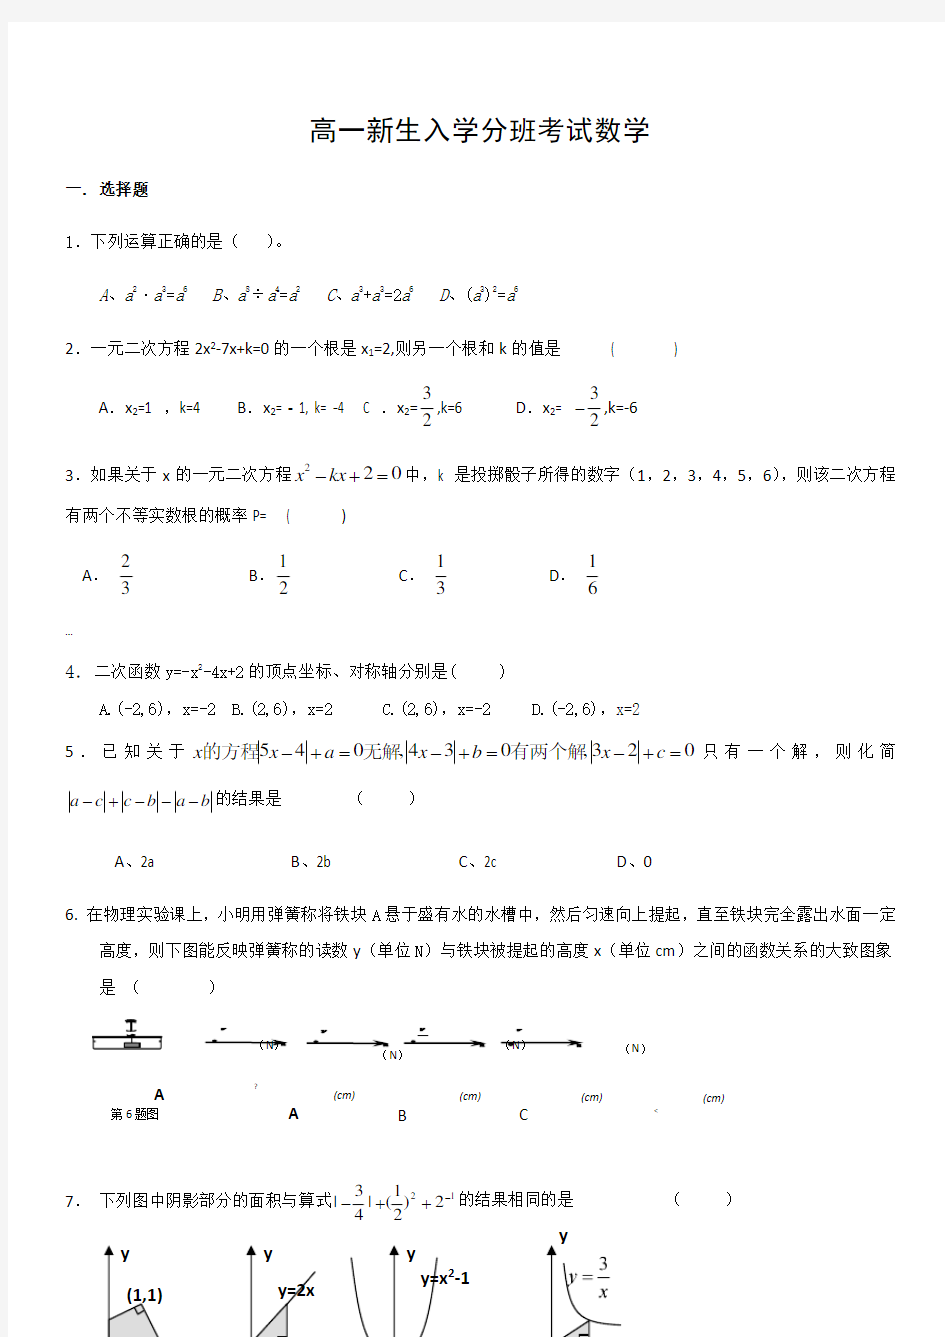 新高一分班考试数学真题(二)